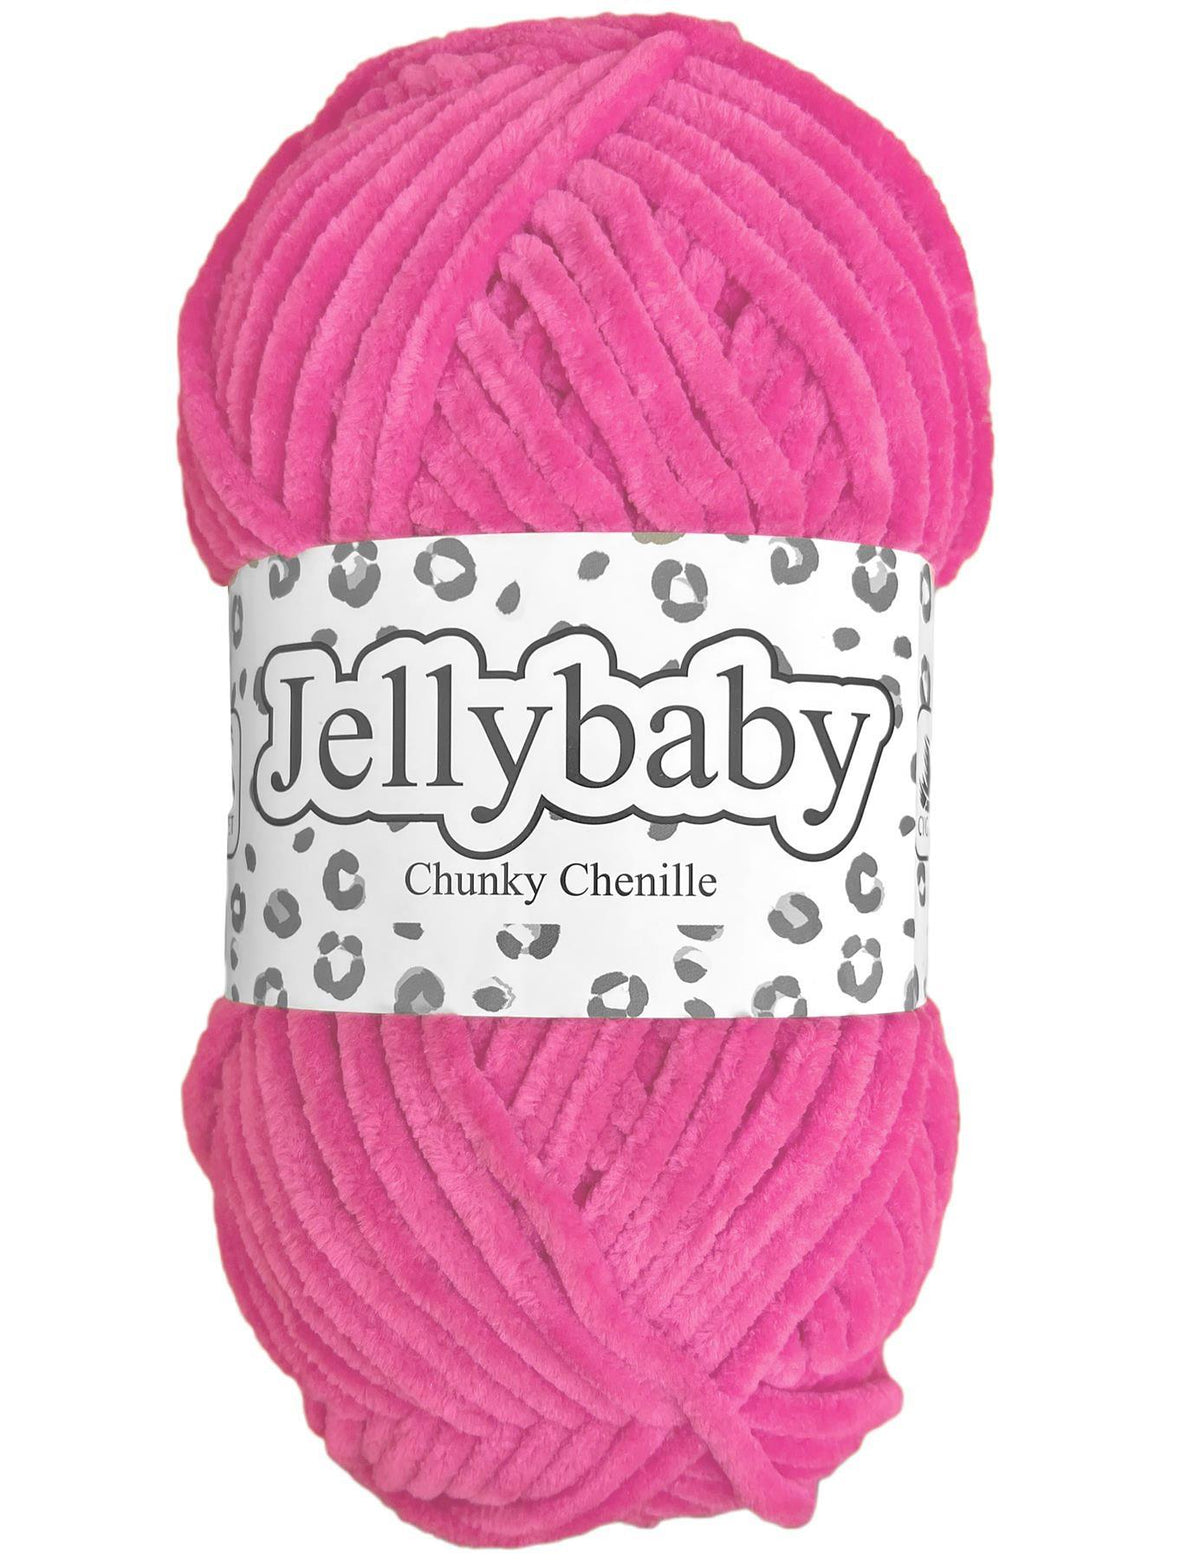 Cygnet Jellybaby Chenille Chunky Bugglegum (016) -100g